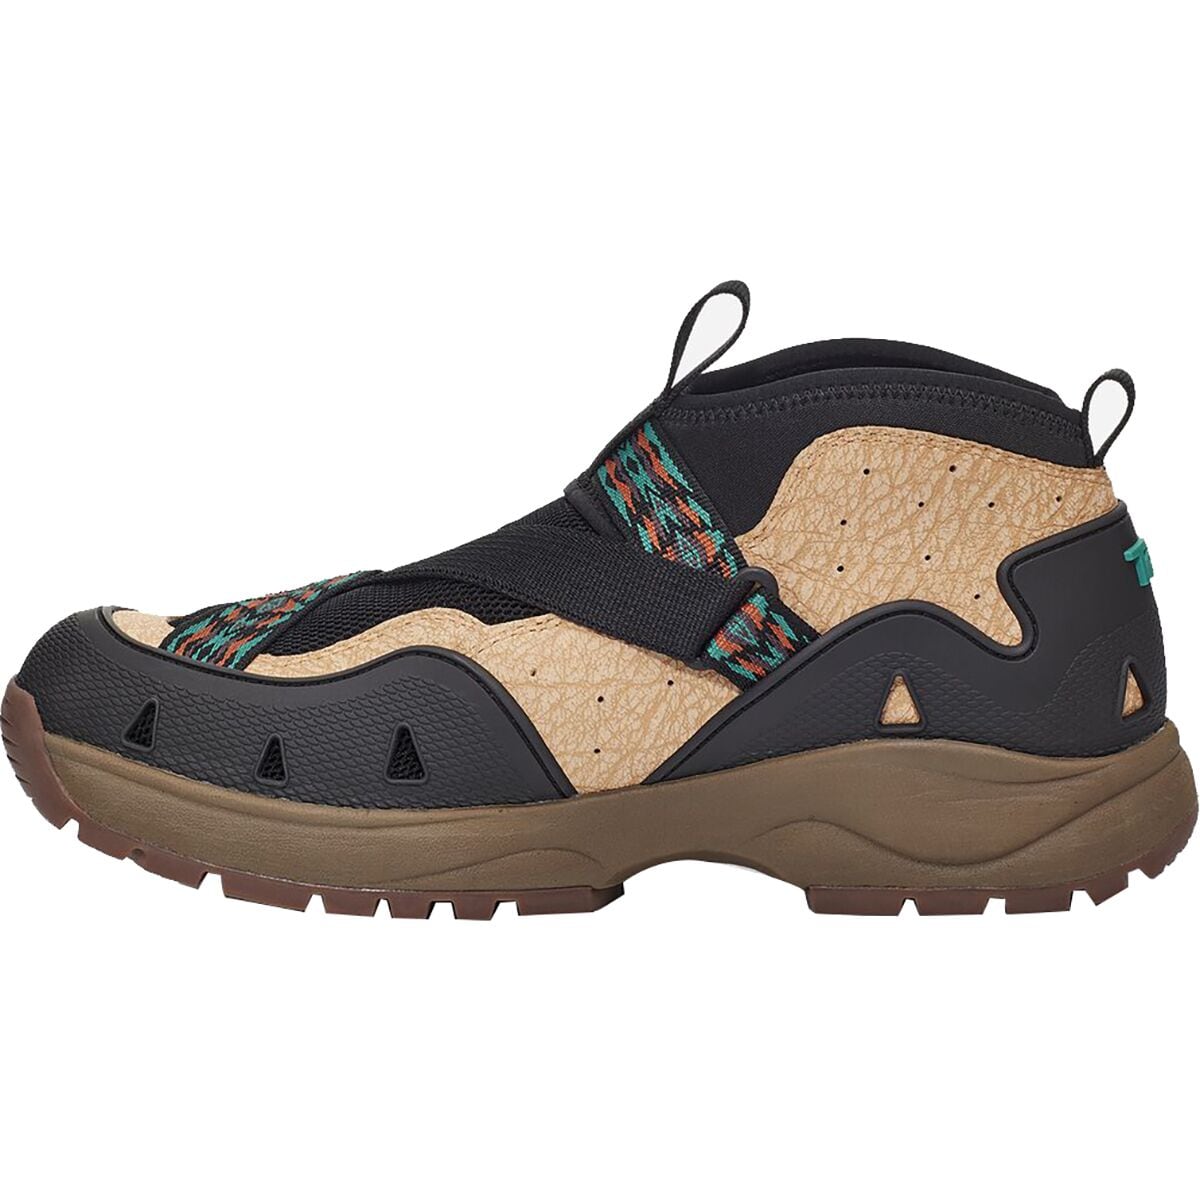 Teva Revive '94 Mid Hiking Shoe - Men's - Footwear